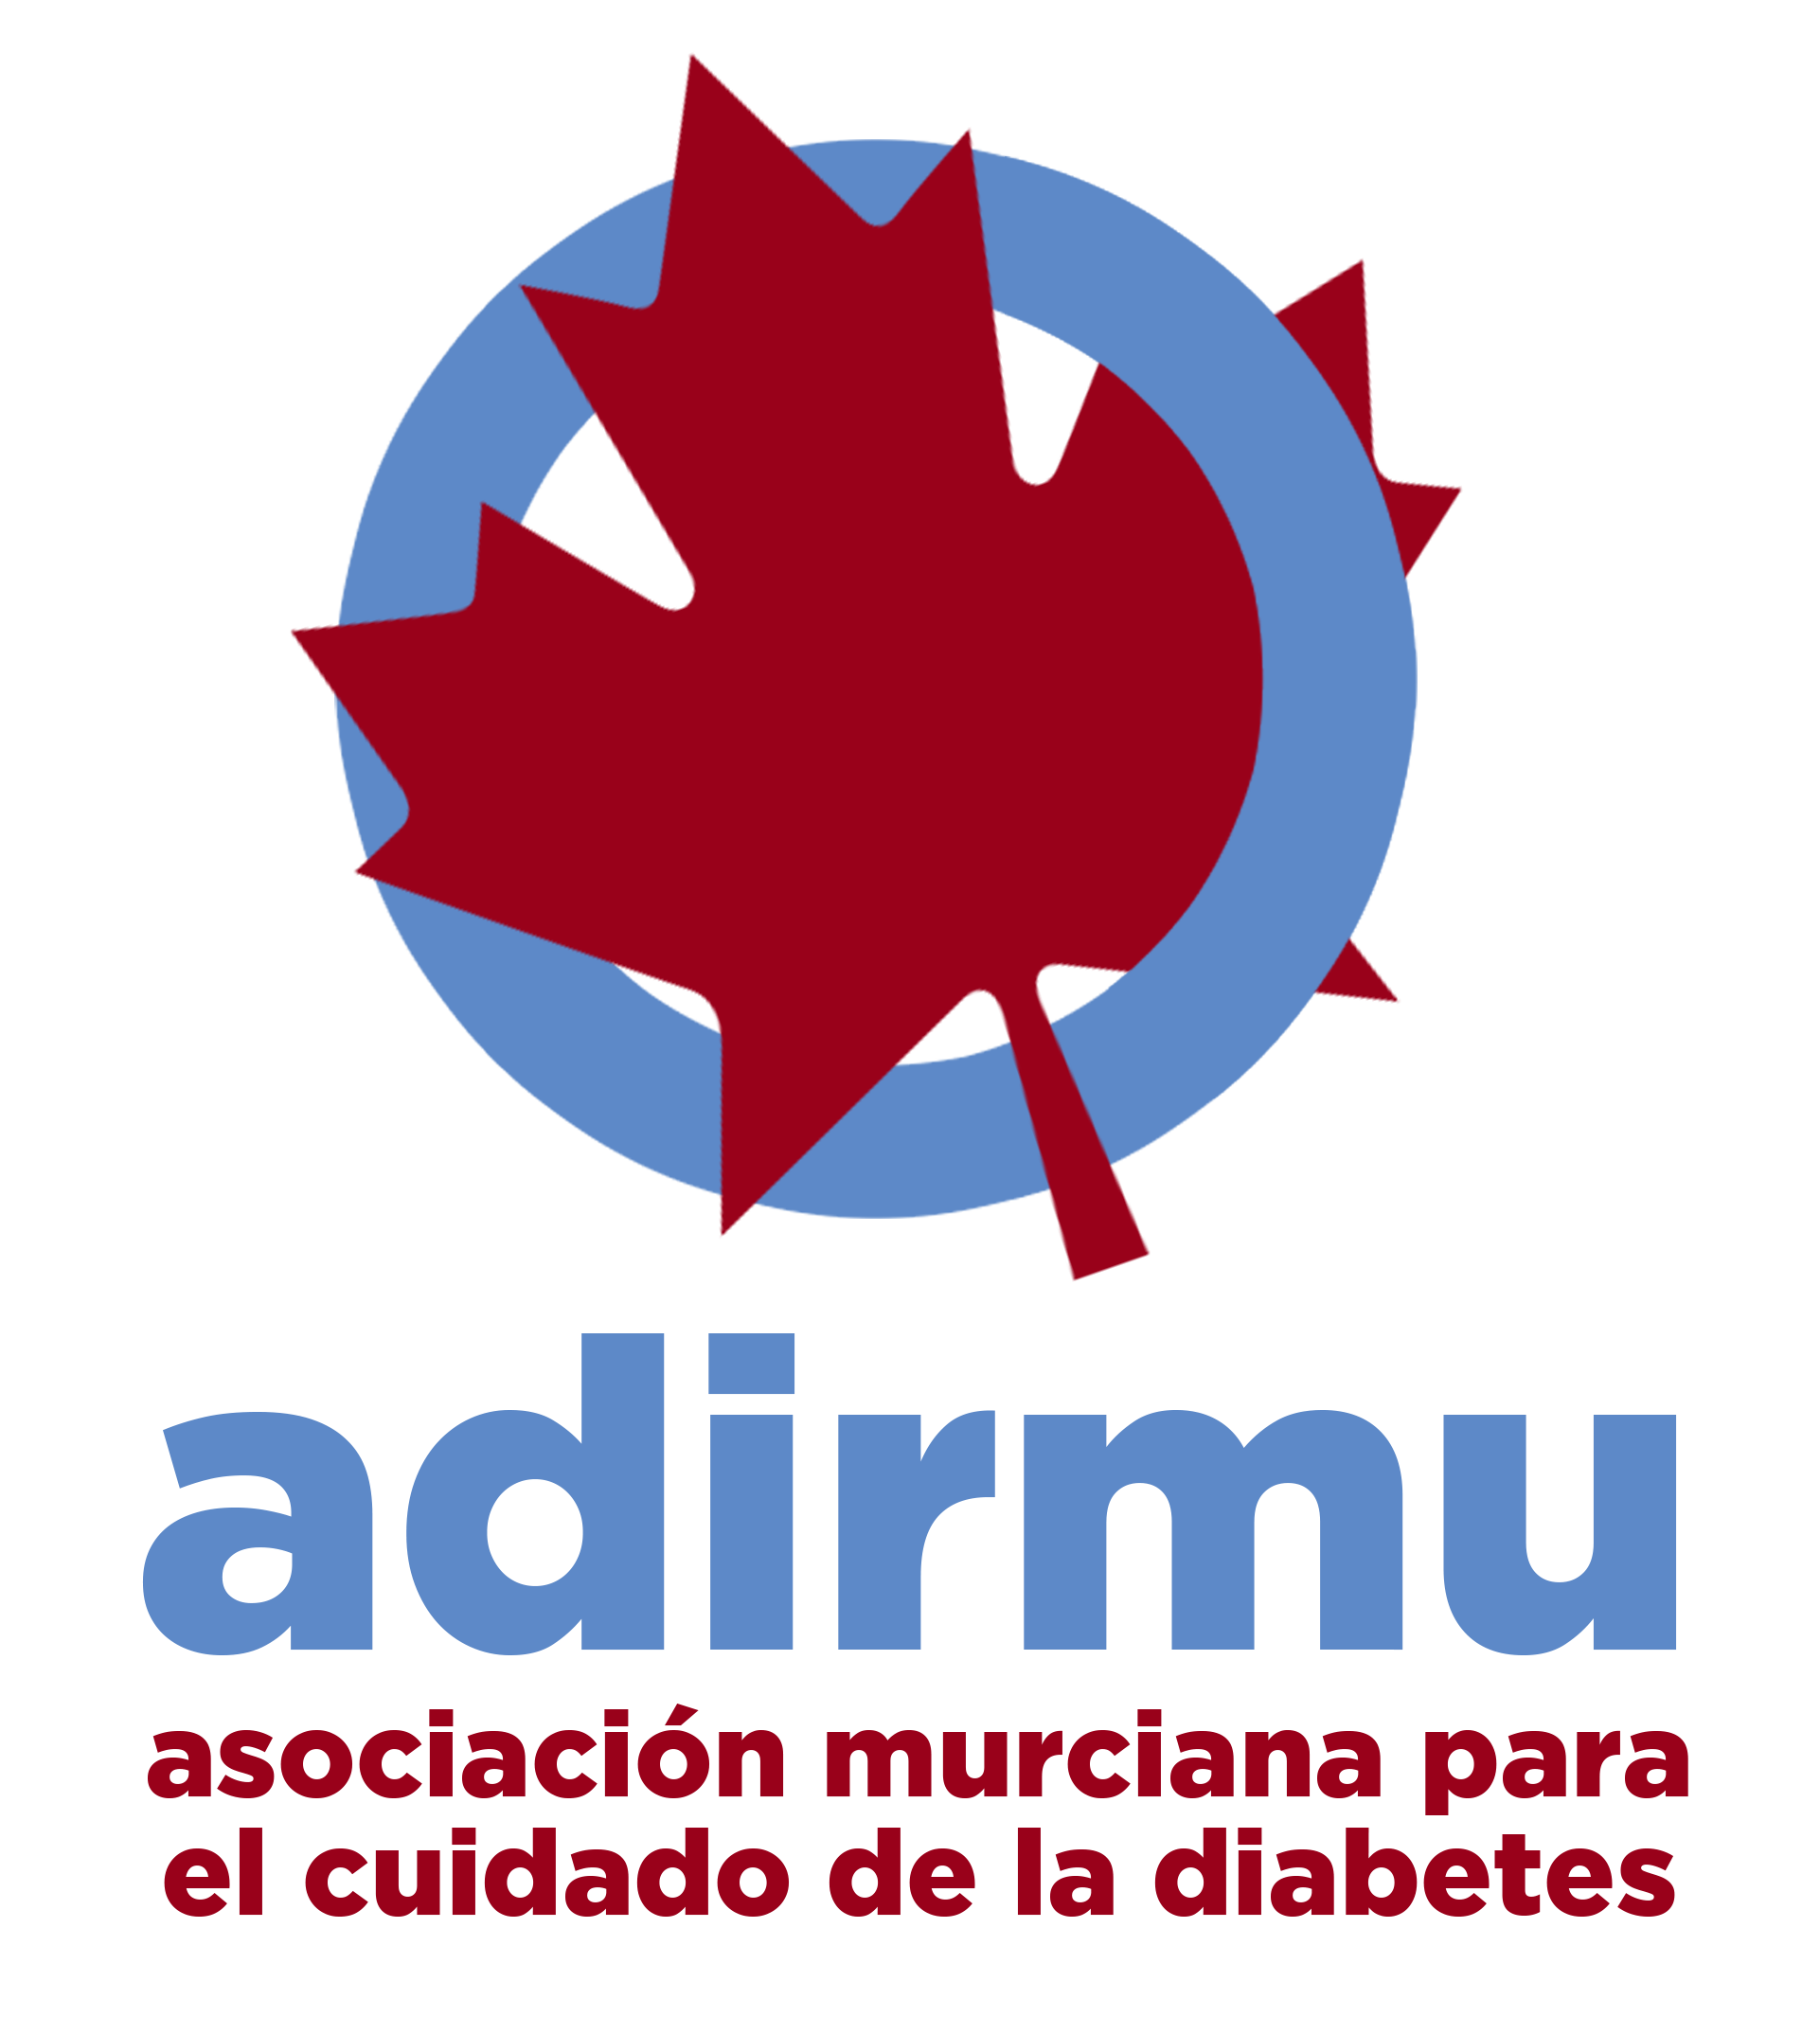 Asociación Murciana para el Cuidado de la Diabetes (Adirmu)